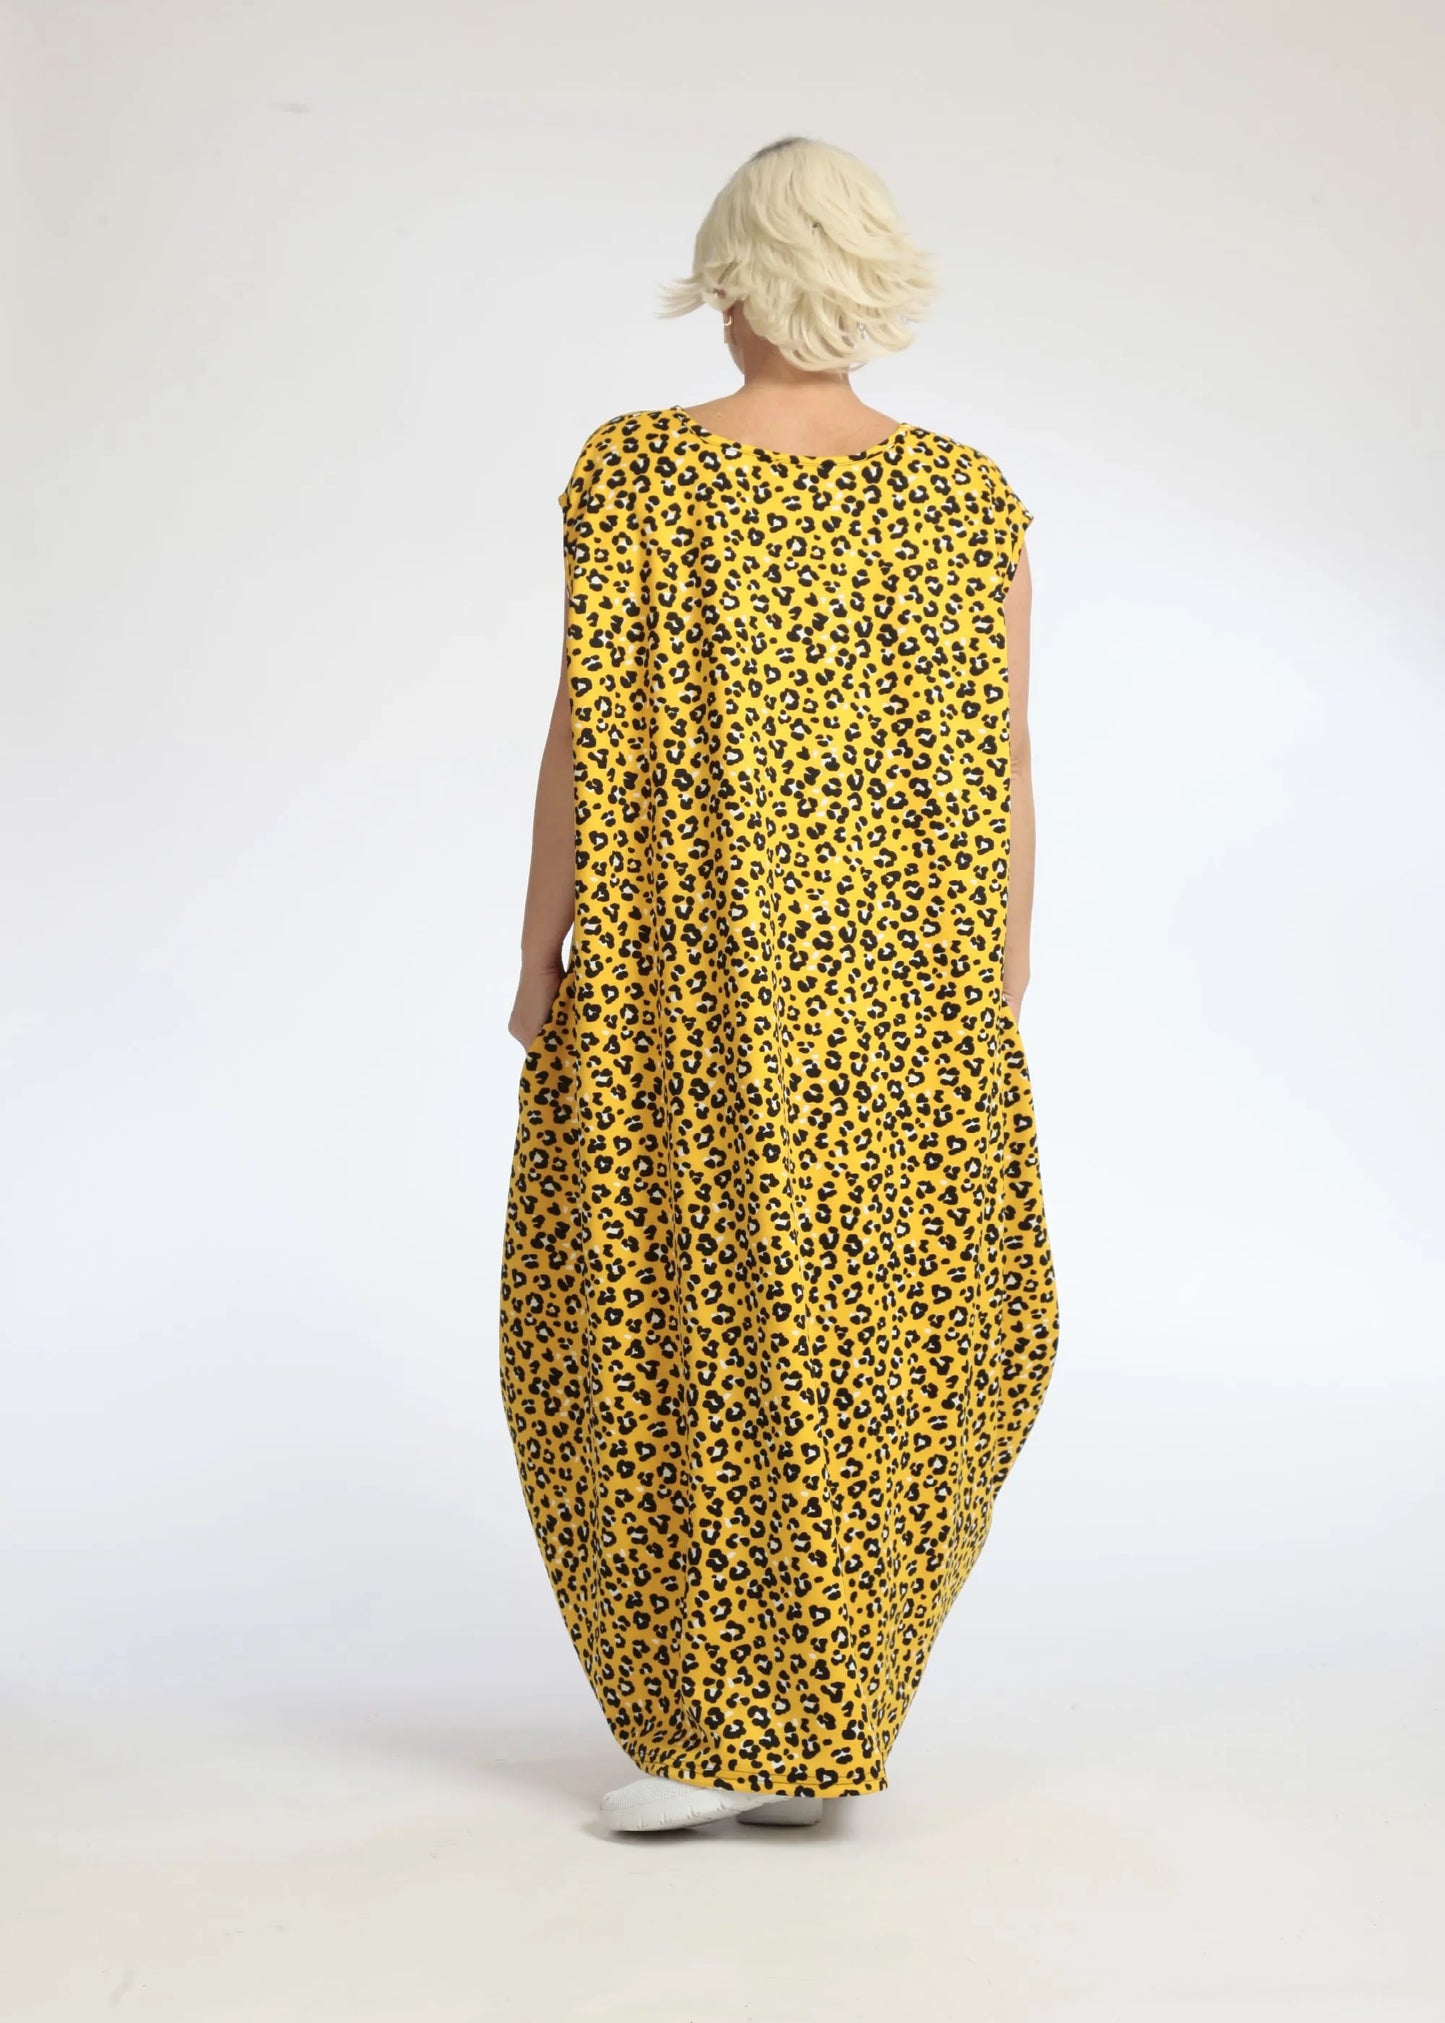 Sommer Kleid in Ballon Form aus glatter Slinky Qualität, Mercy in Gelb-Schwarz